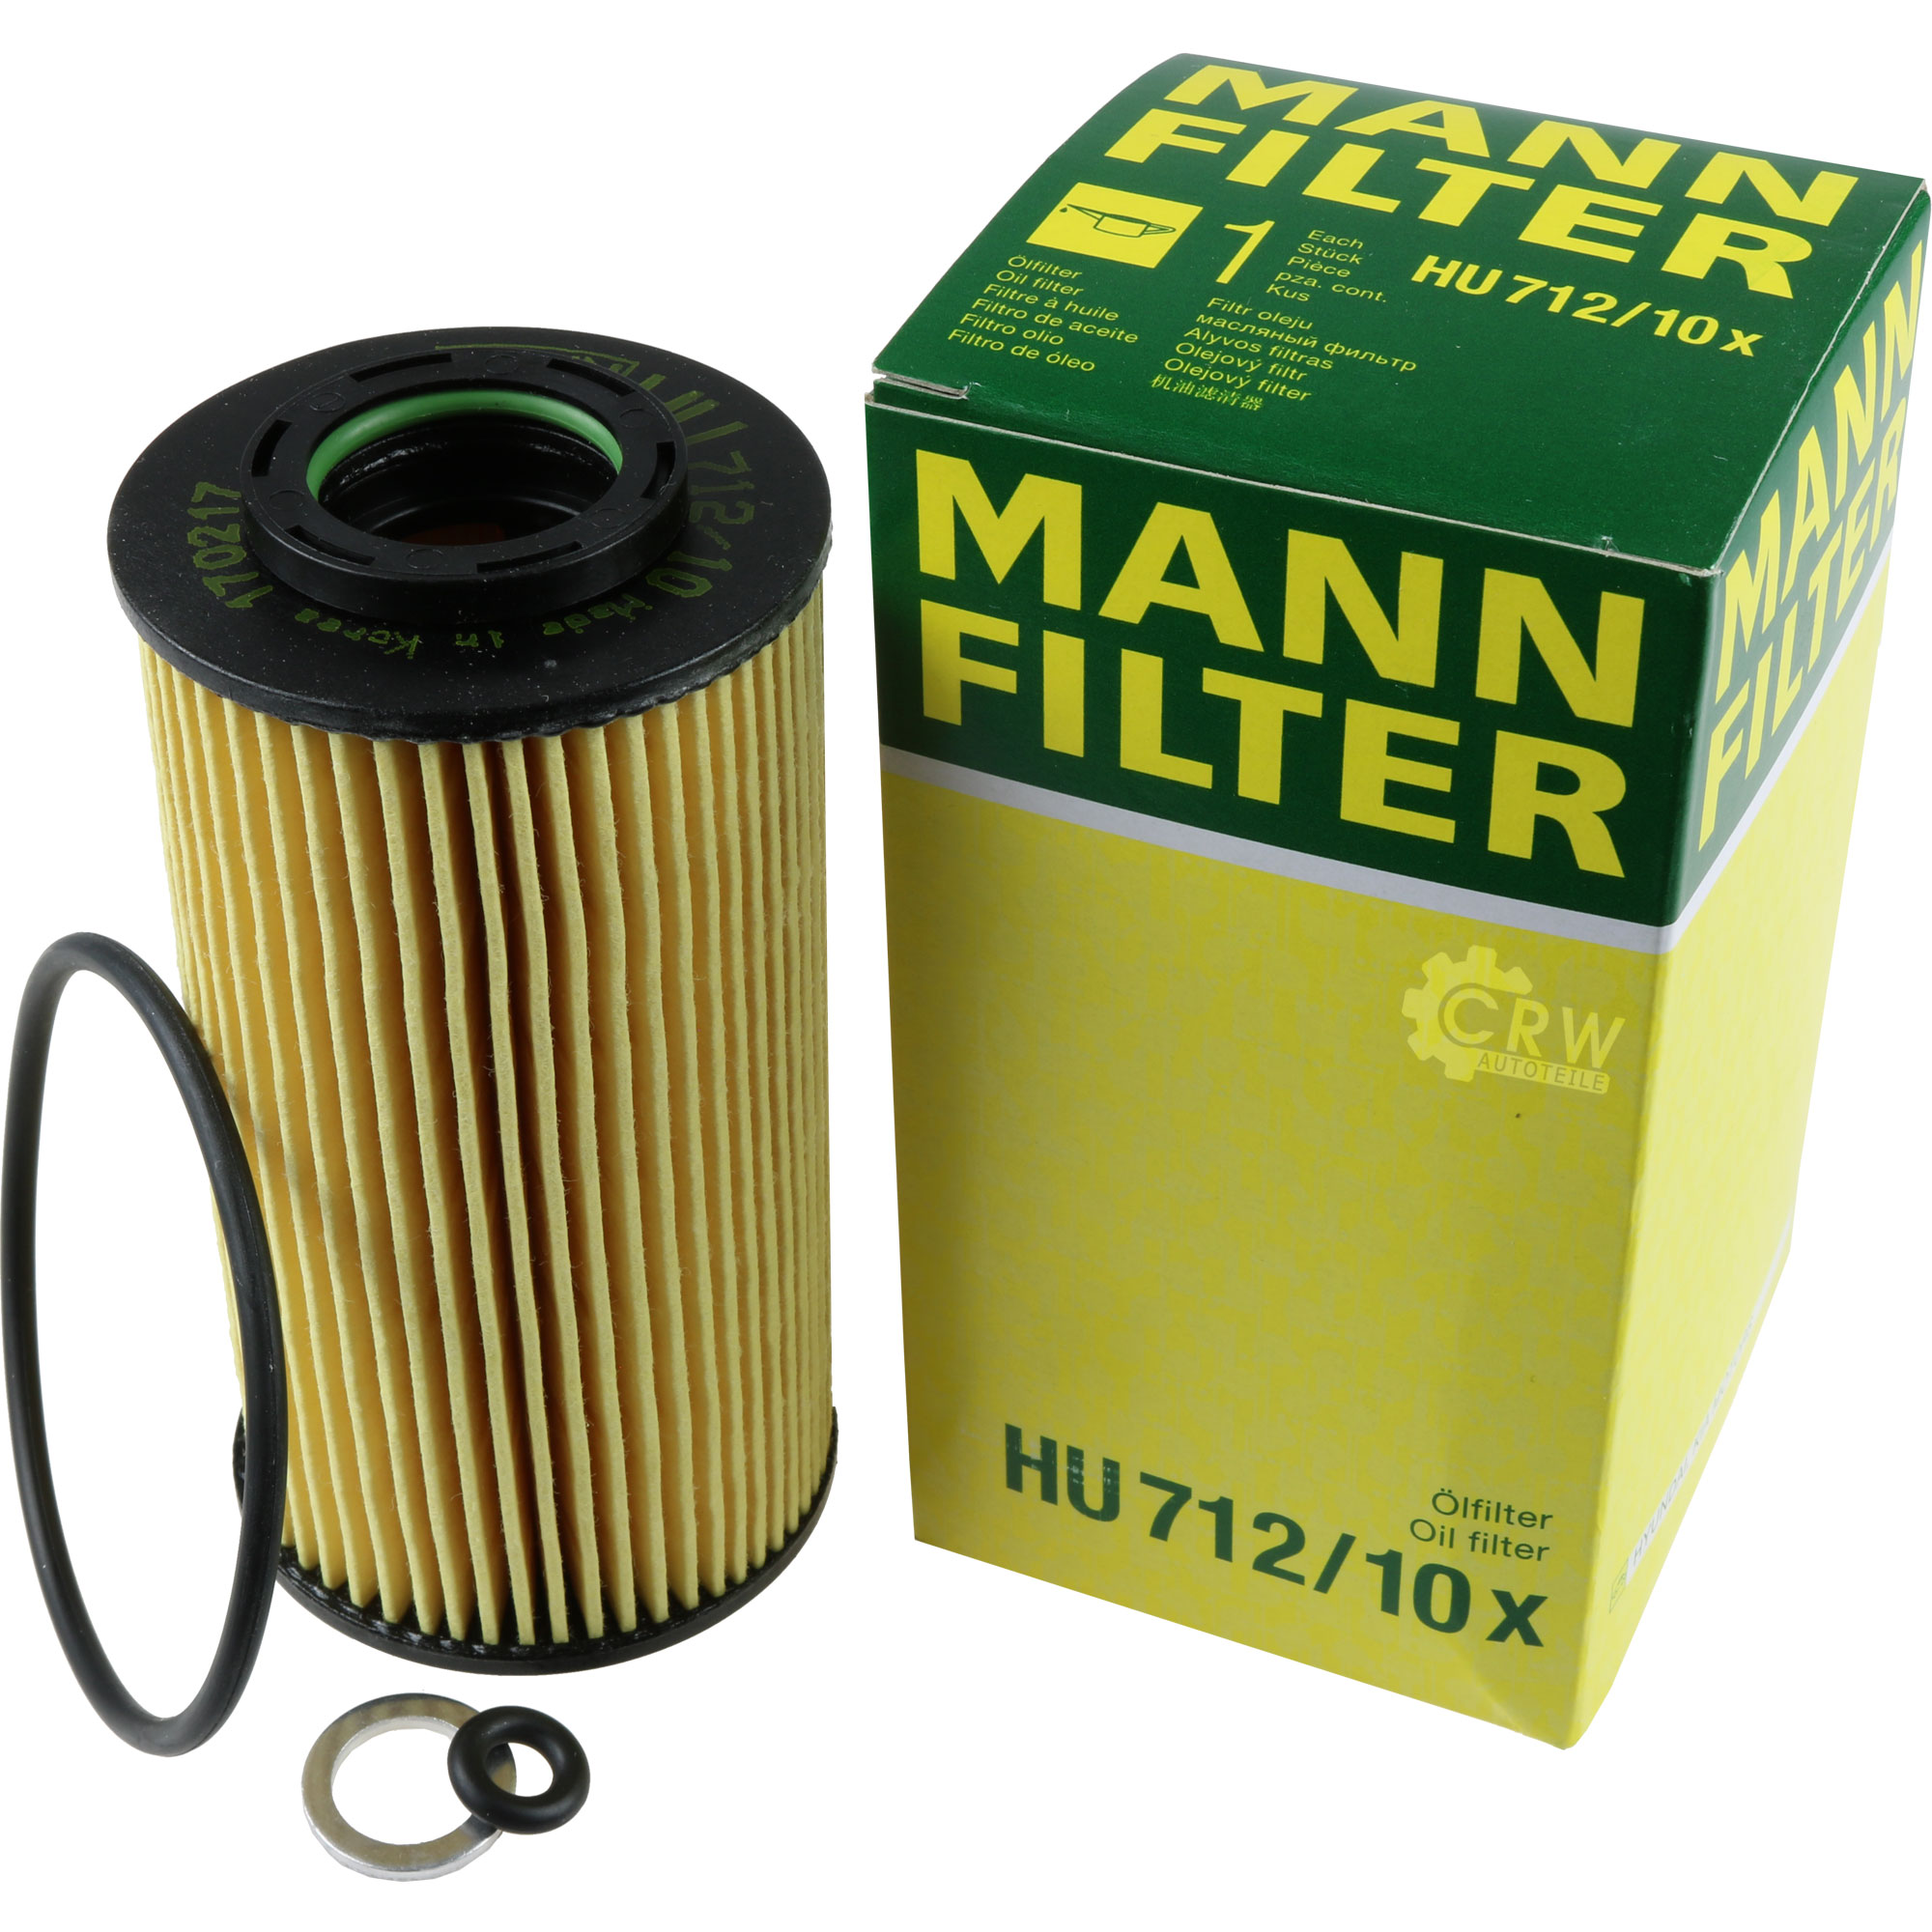 MANN-FILTER Ölfilter HU 712/10 x Oil Filter